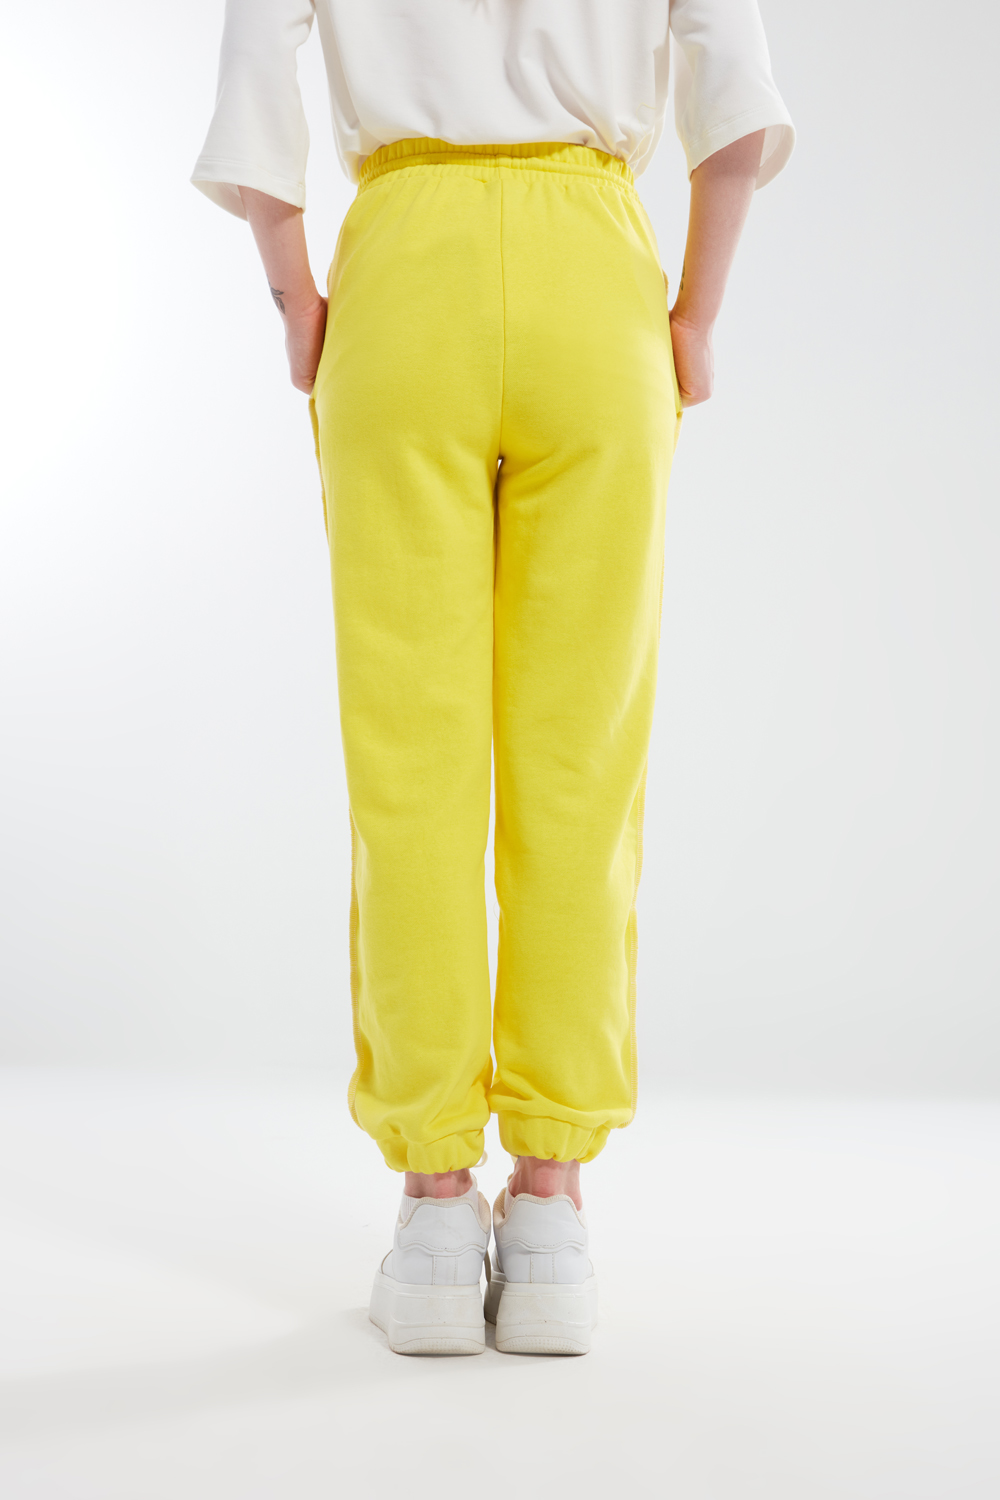 Shirt Stitched Yellow Sweatpants